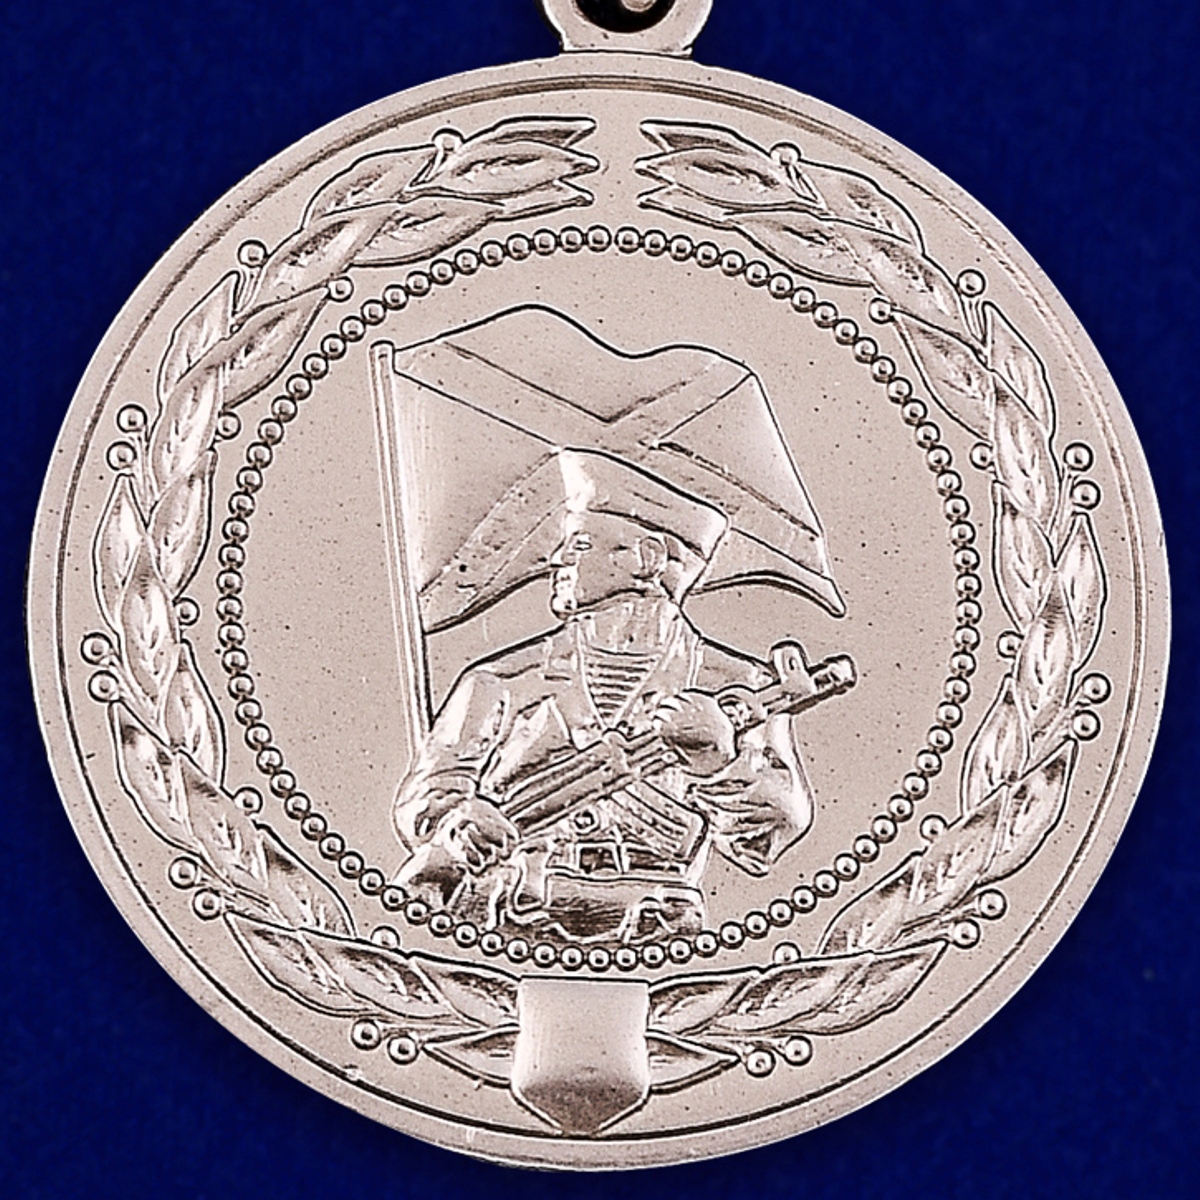 Медаль МО РФ "За службу в морской пехоте" в футляре из бордового флока 